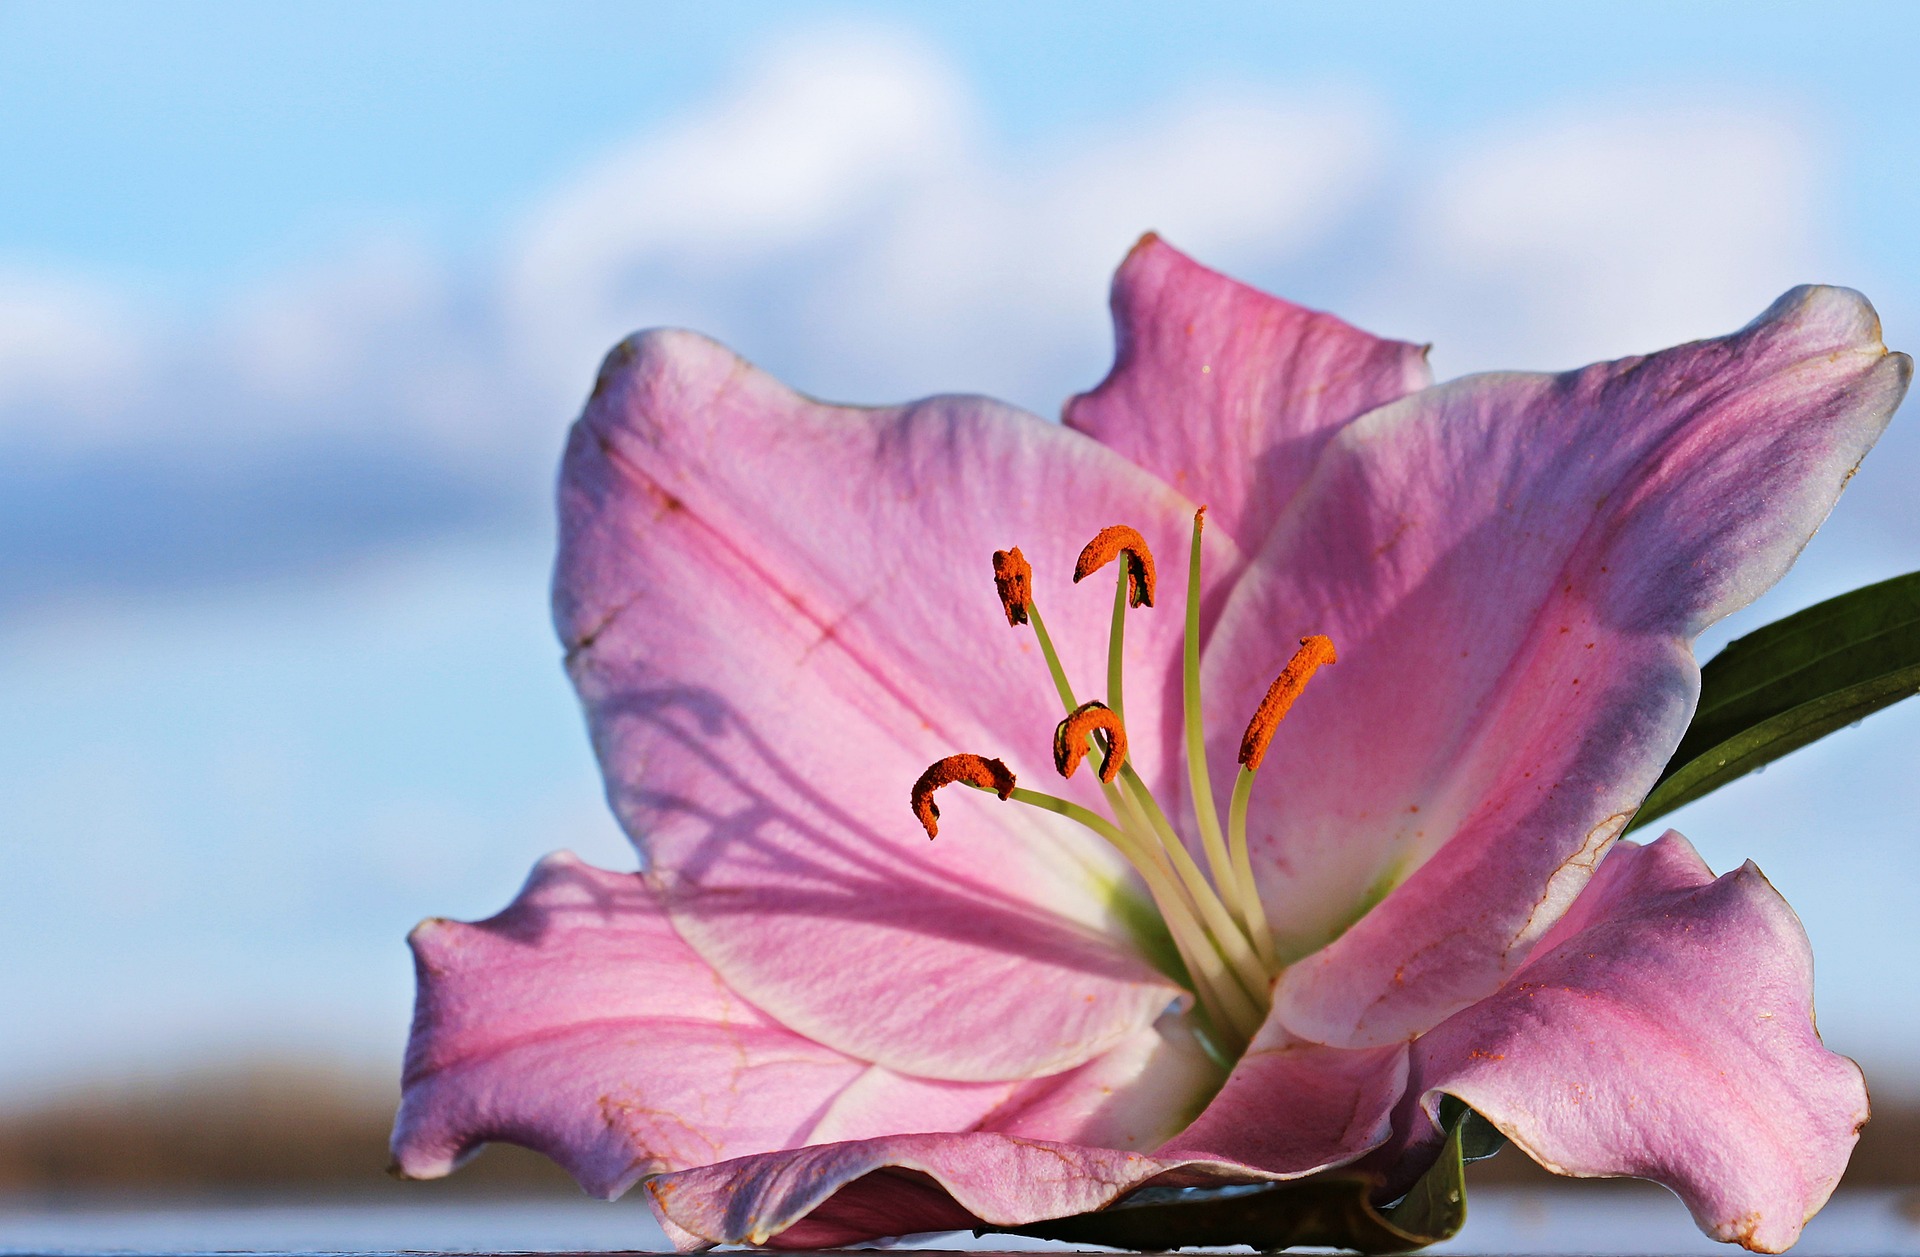 Tajemství smyslnosti: Proč jsou parfémy s liliovou esencí tak oblíbené?